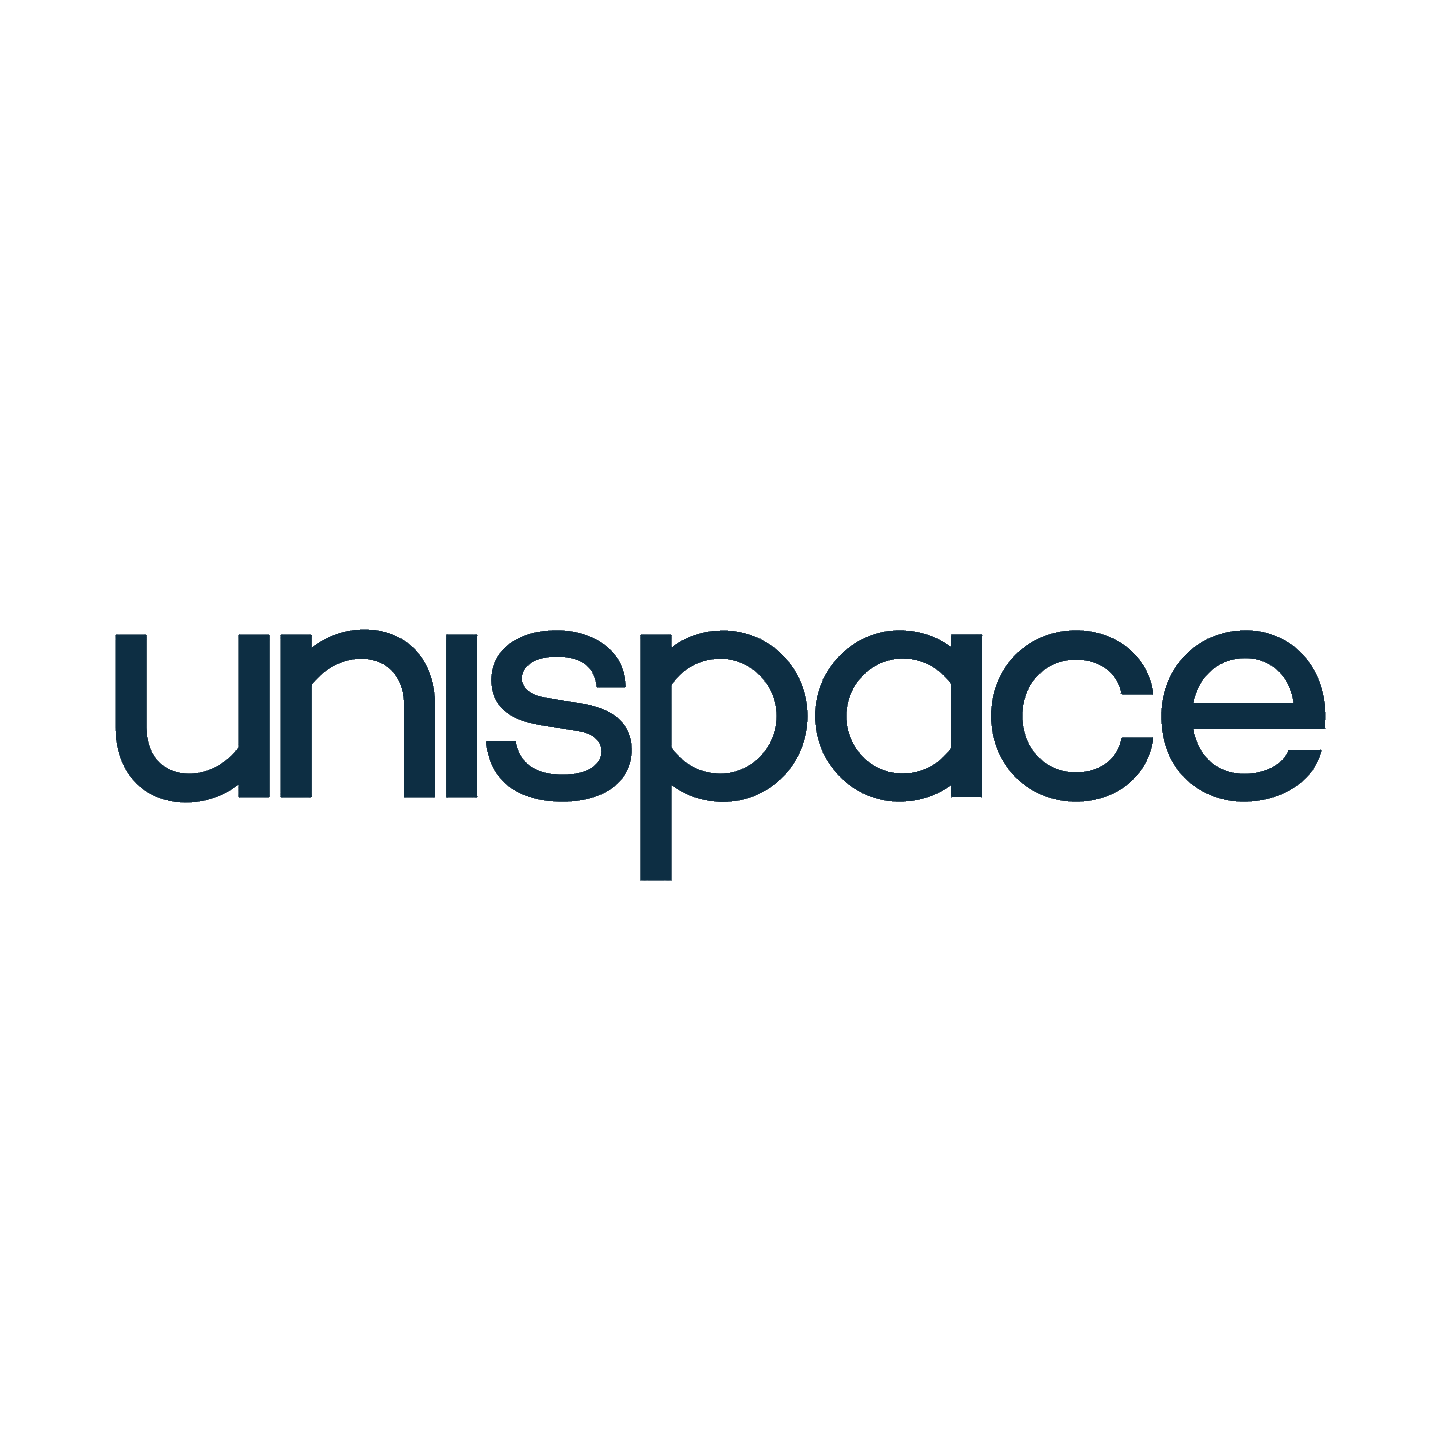 Unispace_Logo.png